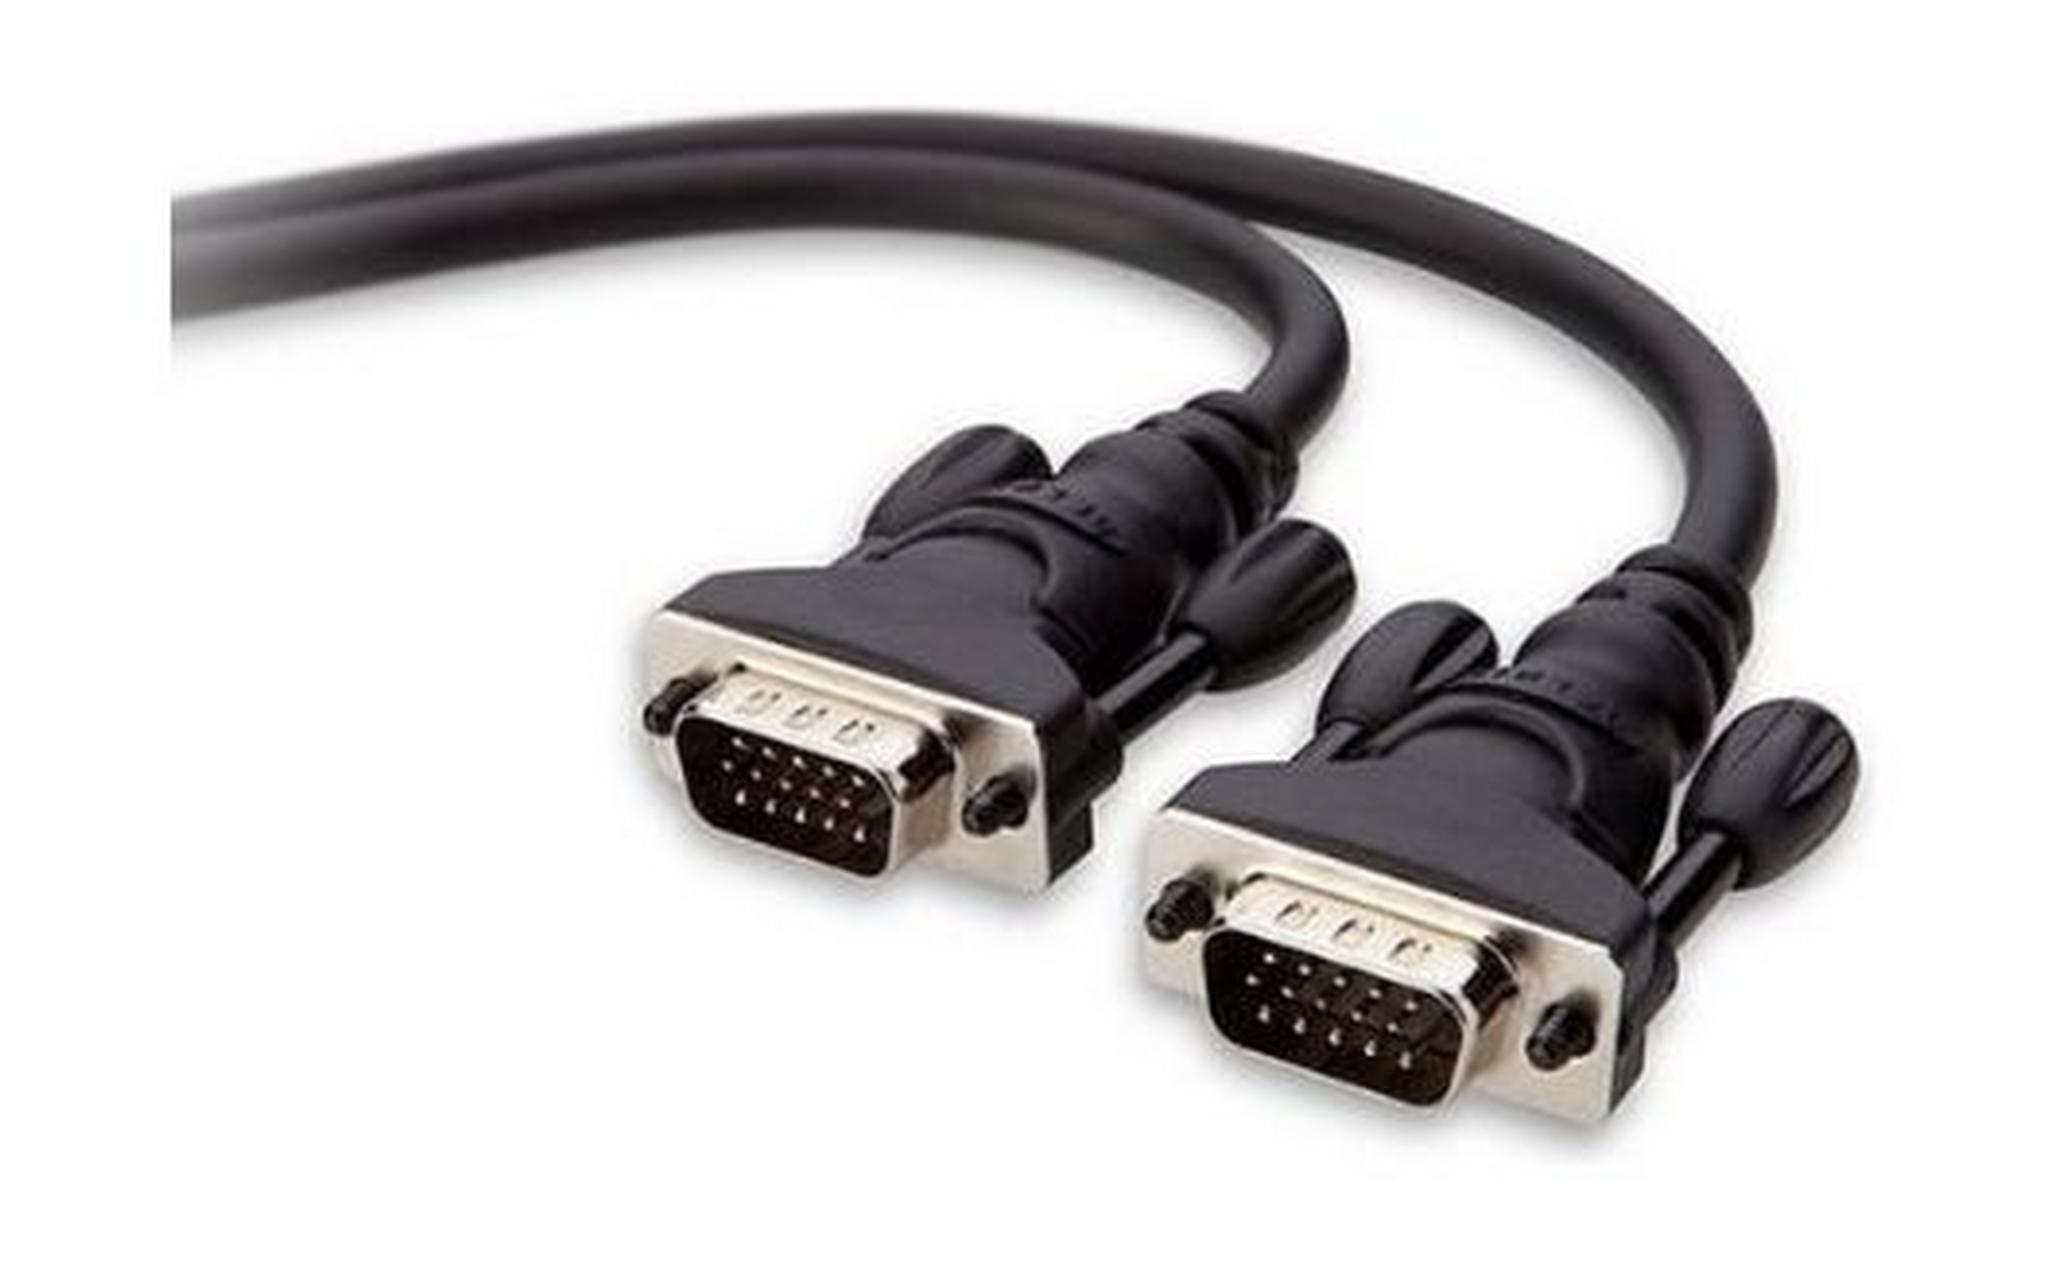 Belkin VGA Cable 1.8 Meter (F2N028CP) - Black